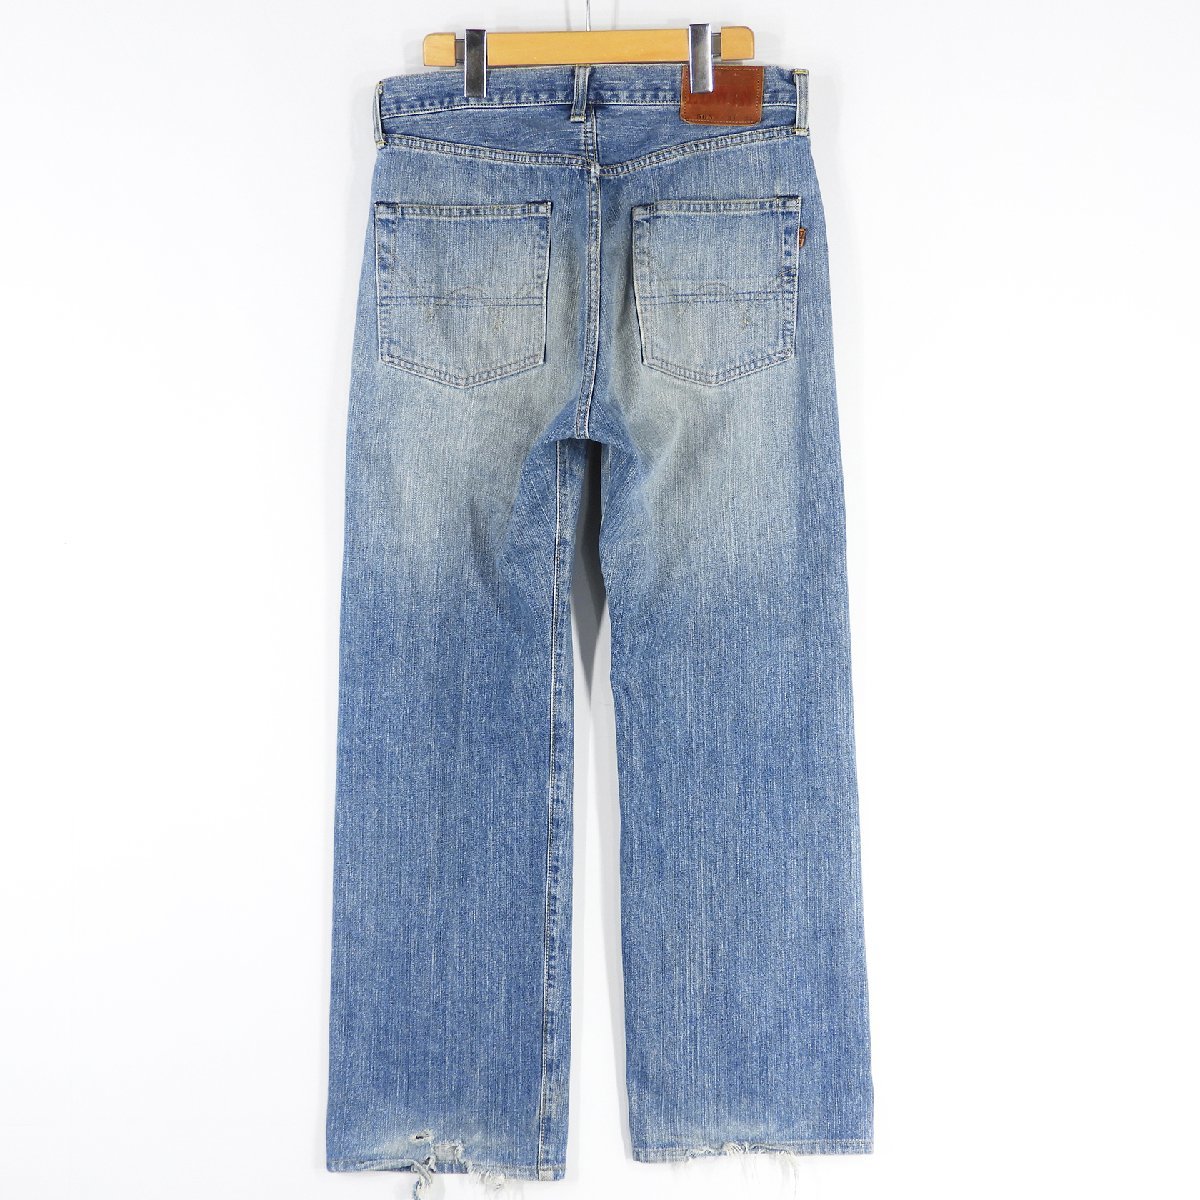 EDWIN 1505 Denim pants wide strut size 31 #15842 jeans American Casual Edwin 